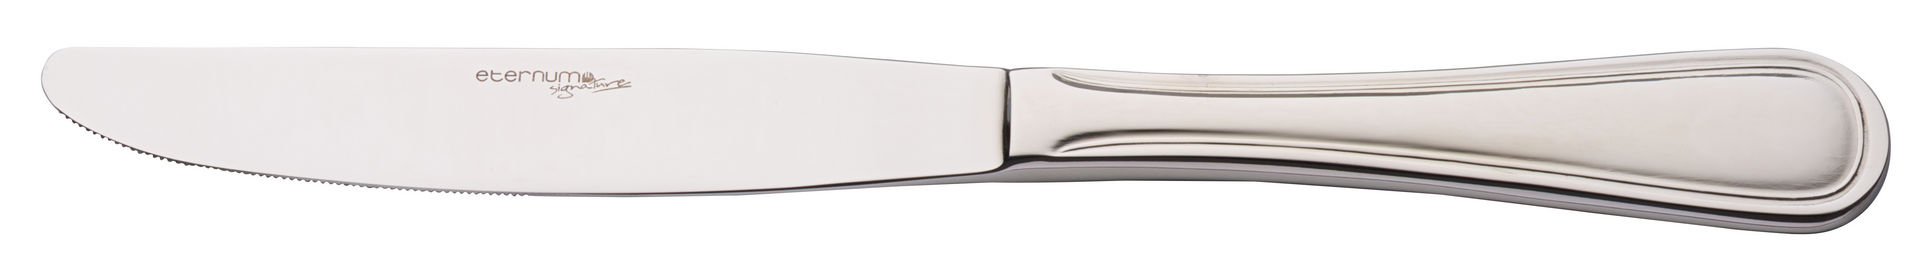 Anser Table Knife - F26001-000000-B01012 (Pack of 12)